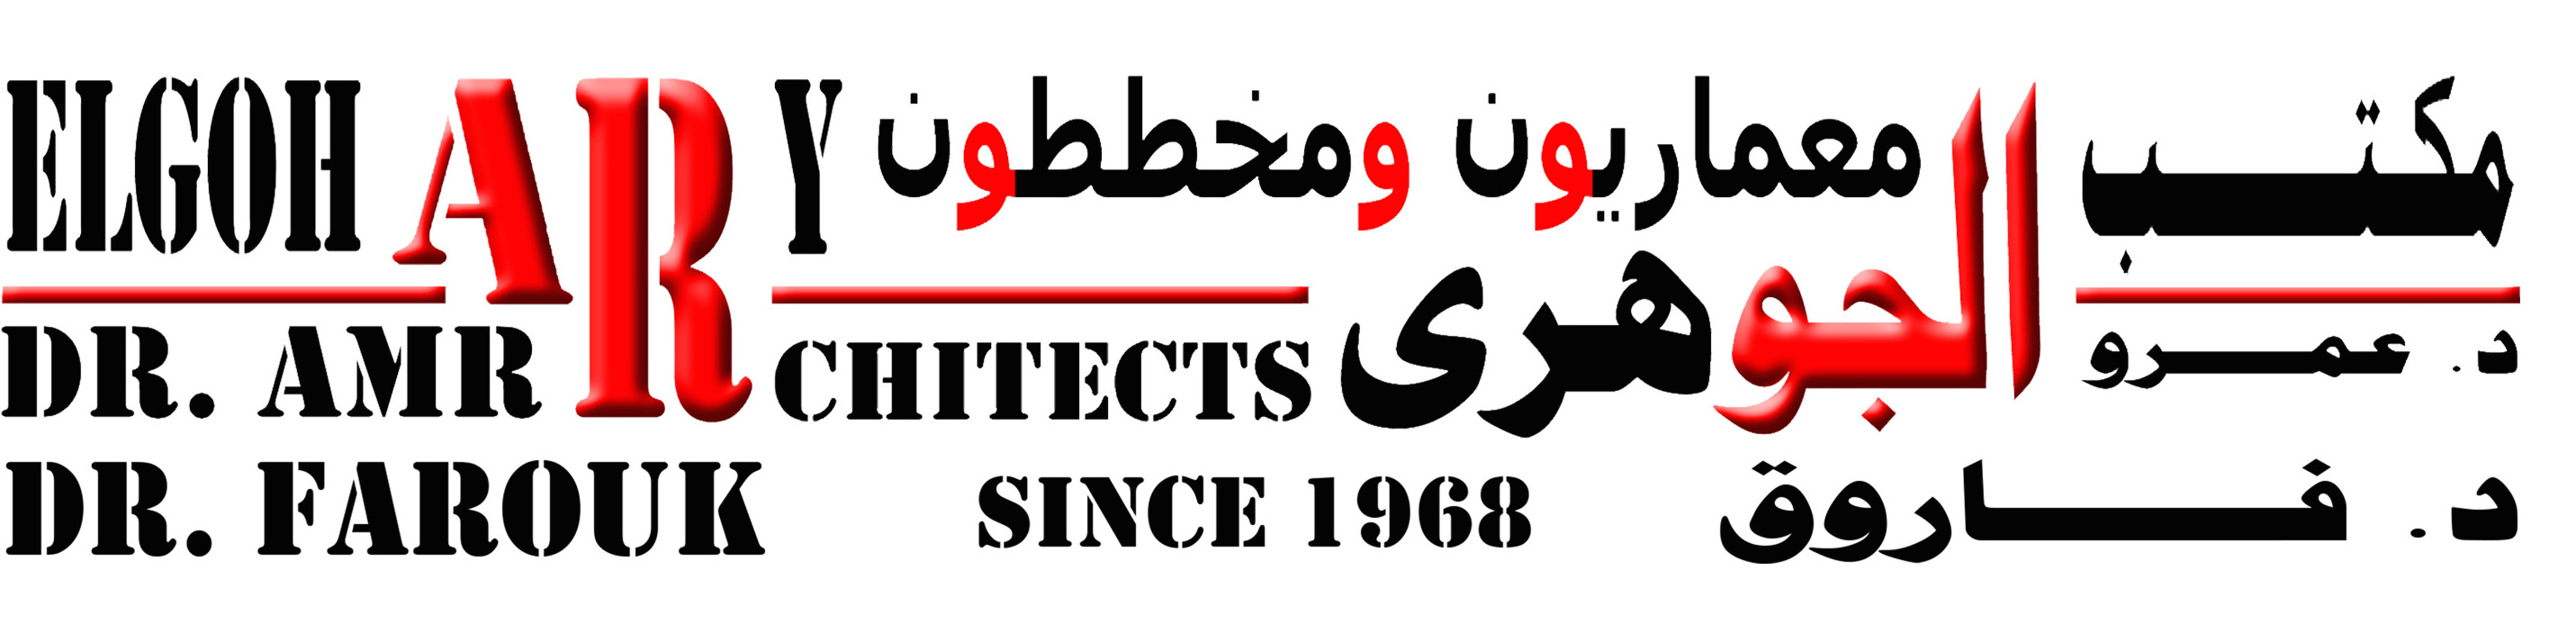 elgohary architects logo